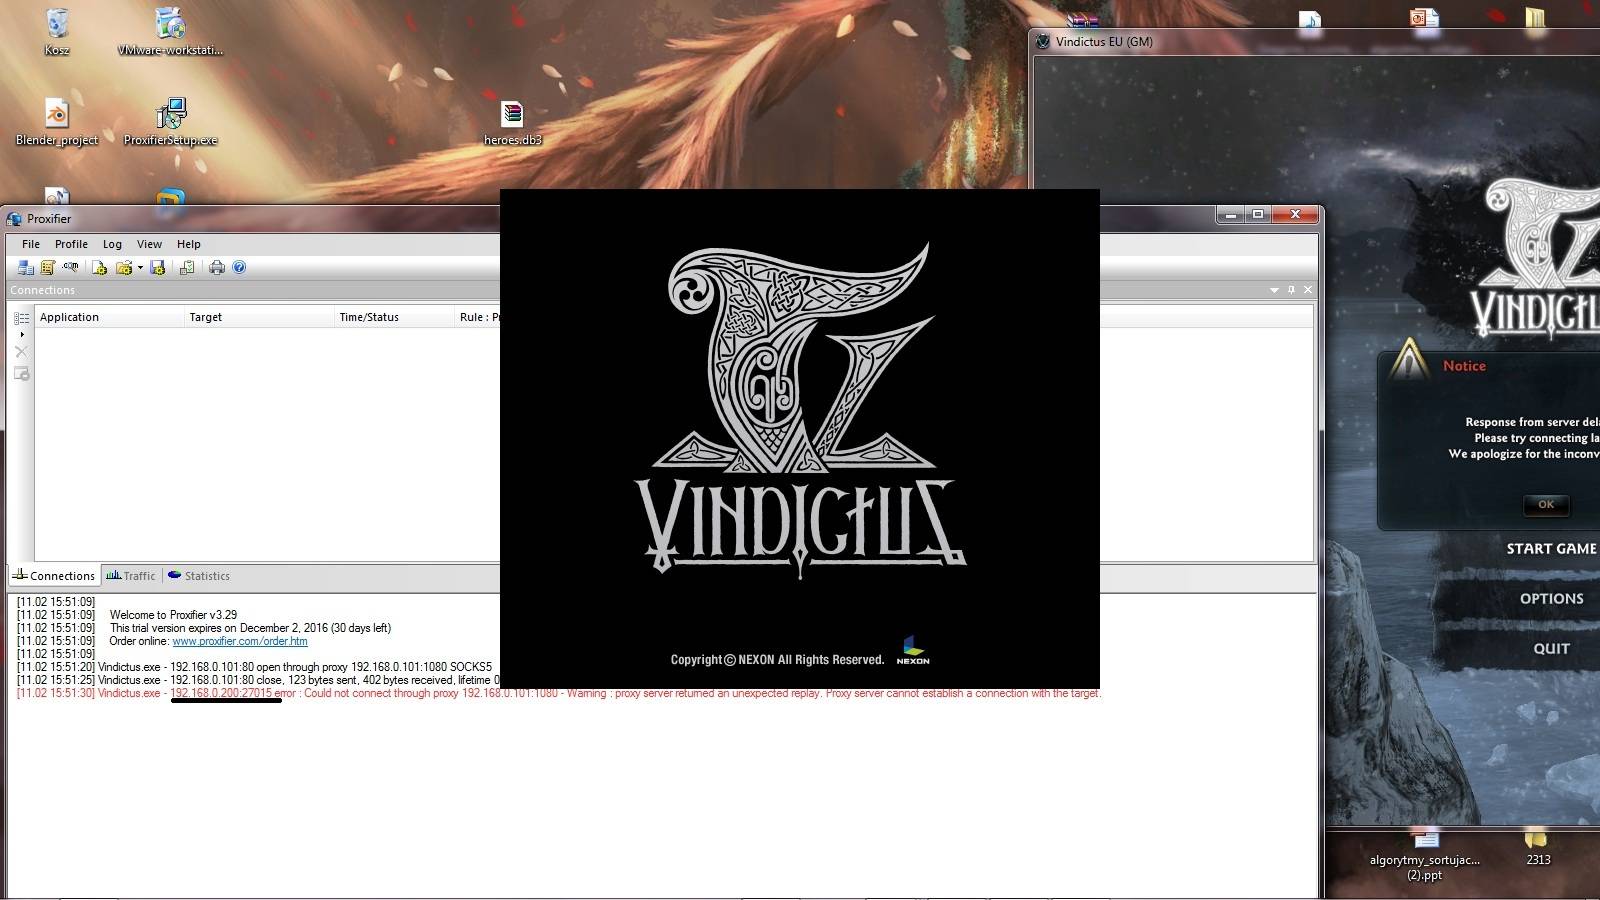 1bO7VGu - Vindictus Server VMWare Image for EU Client 1.69. - RaGEZONE Forums